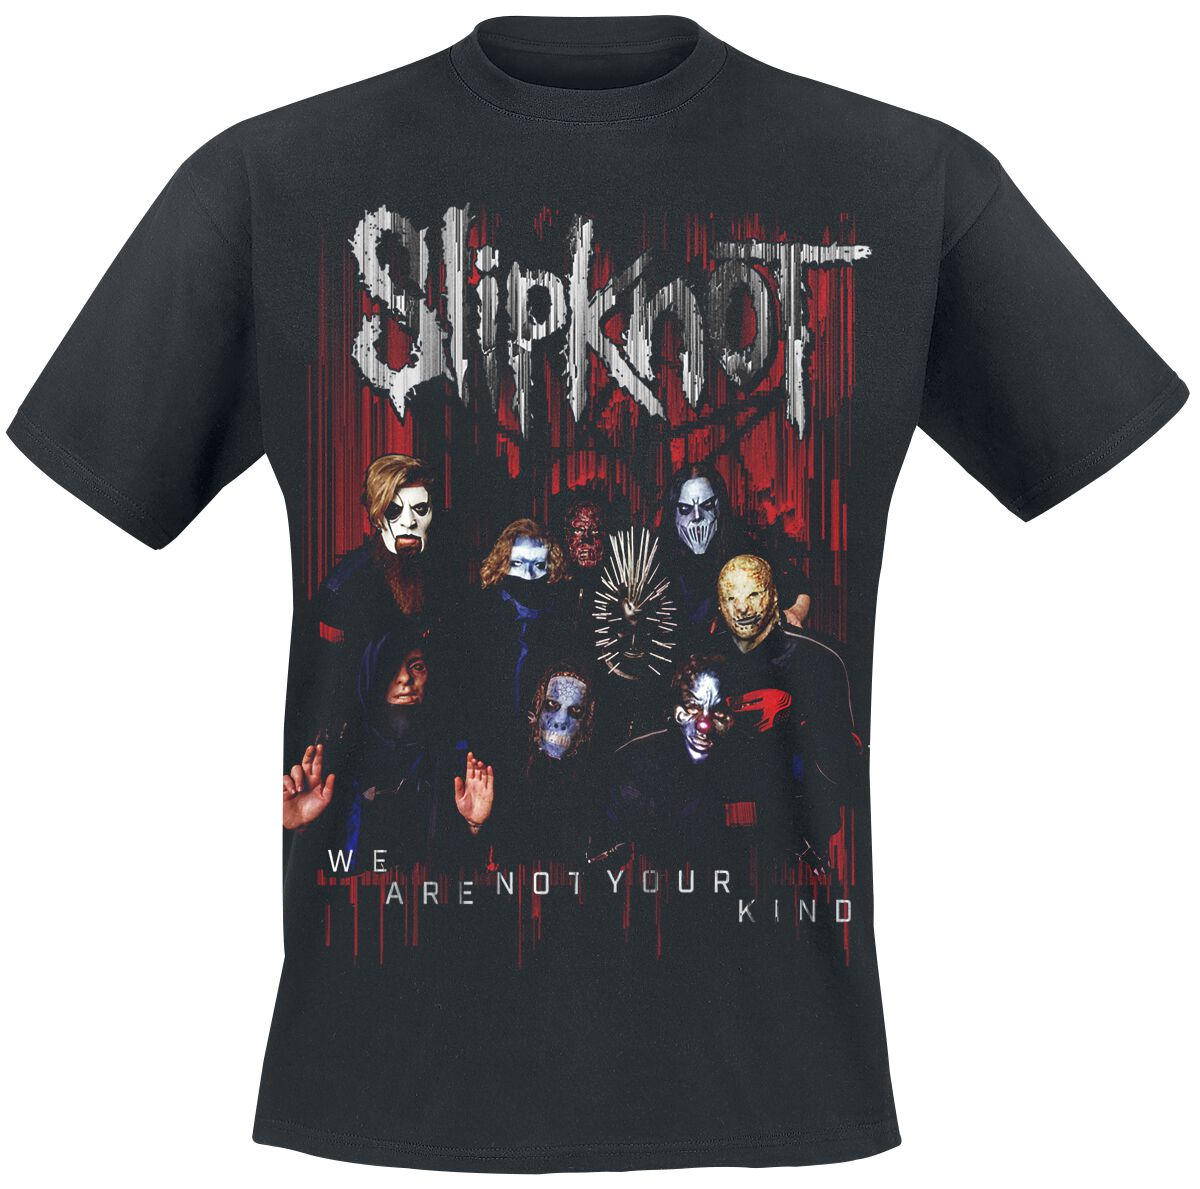 Slipknot Group Photo T-Shirt schwarz in S